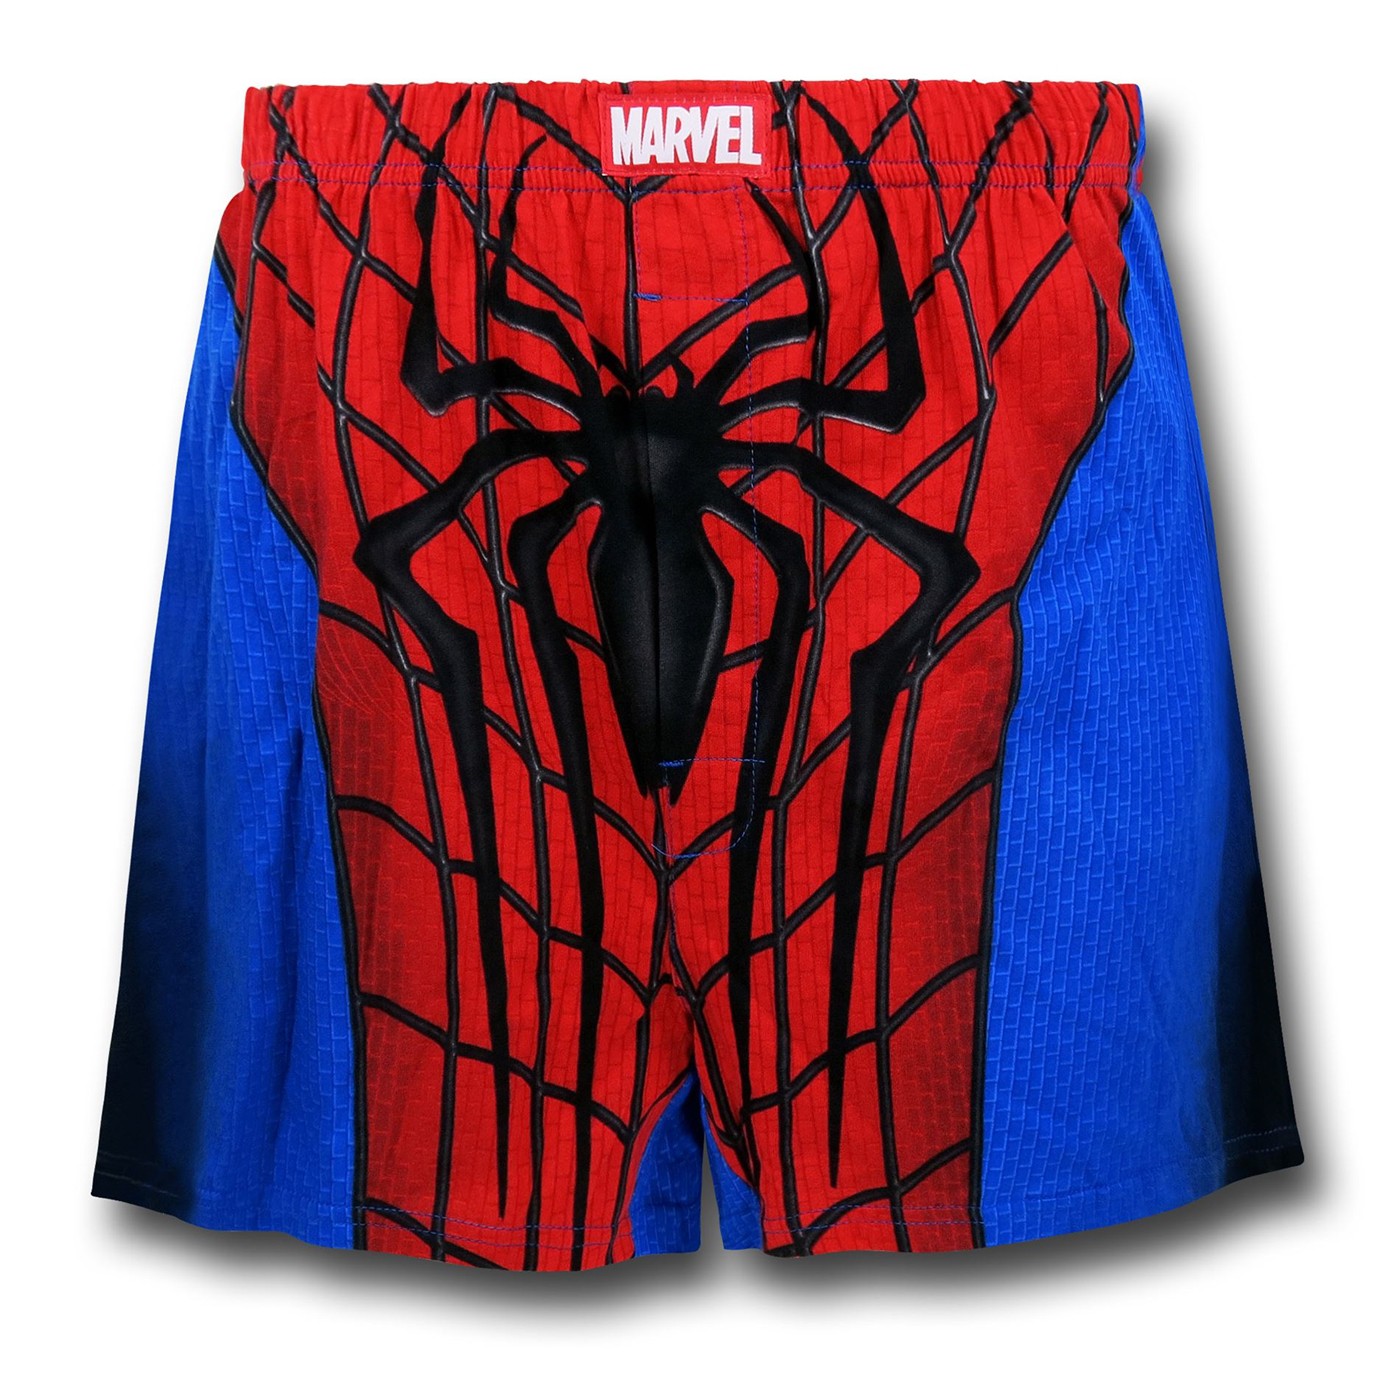 Spider-Man Costume Suit Men's Underwear Boxer Briefs (32-34) Red